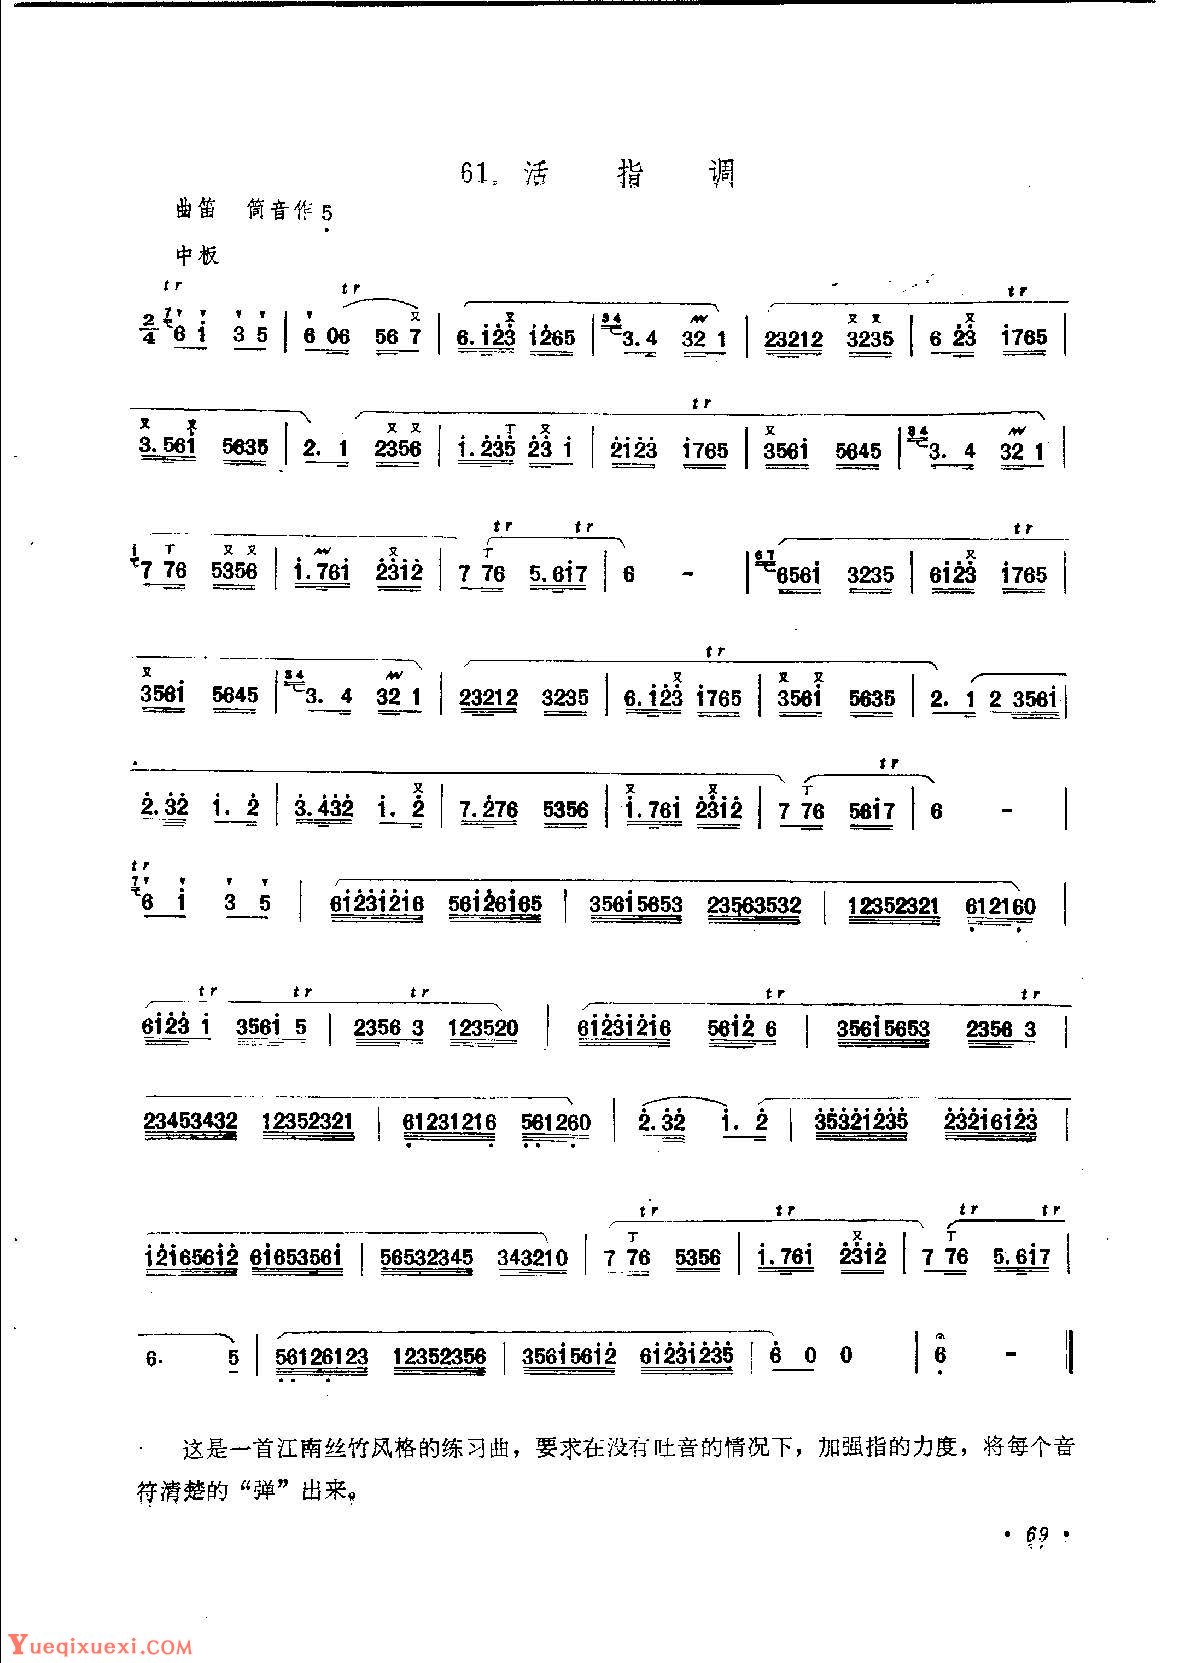 初级笛箫乐曲《黄水谣》简单的竹笛曲-笛子曲谱 - 乐器学习网